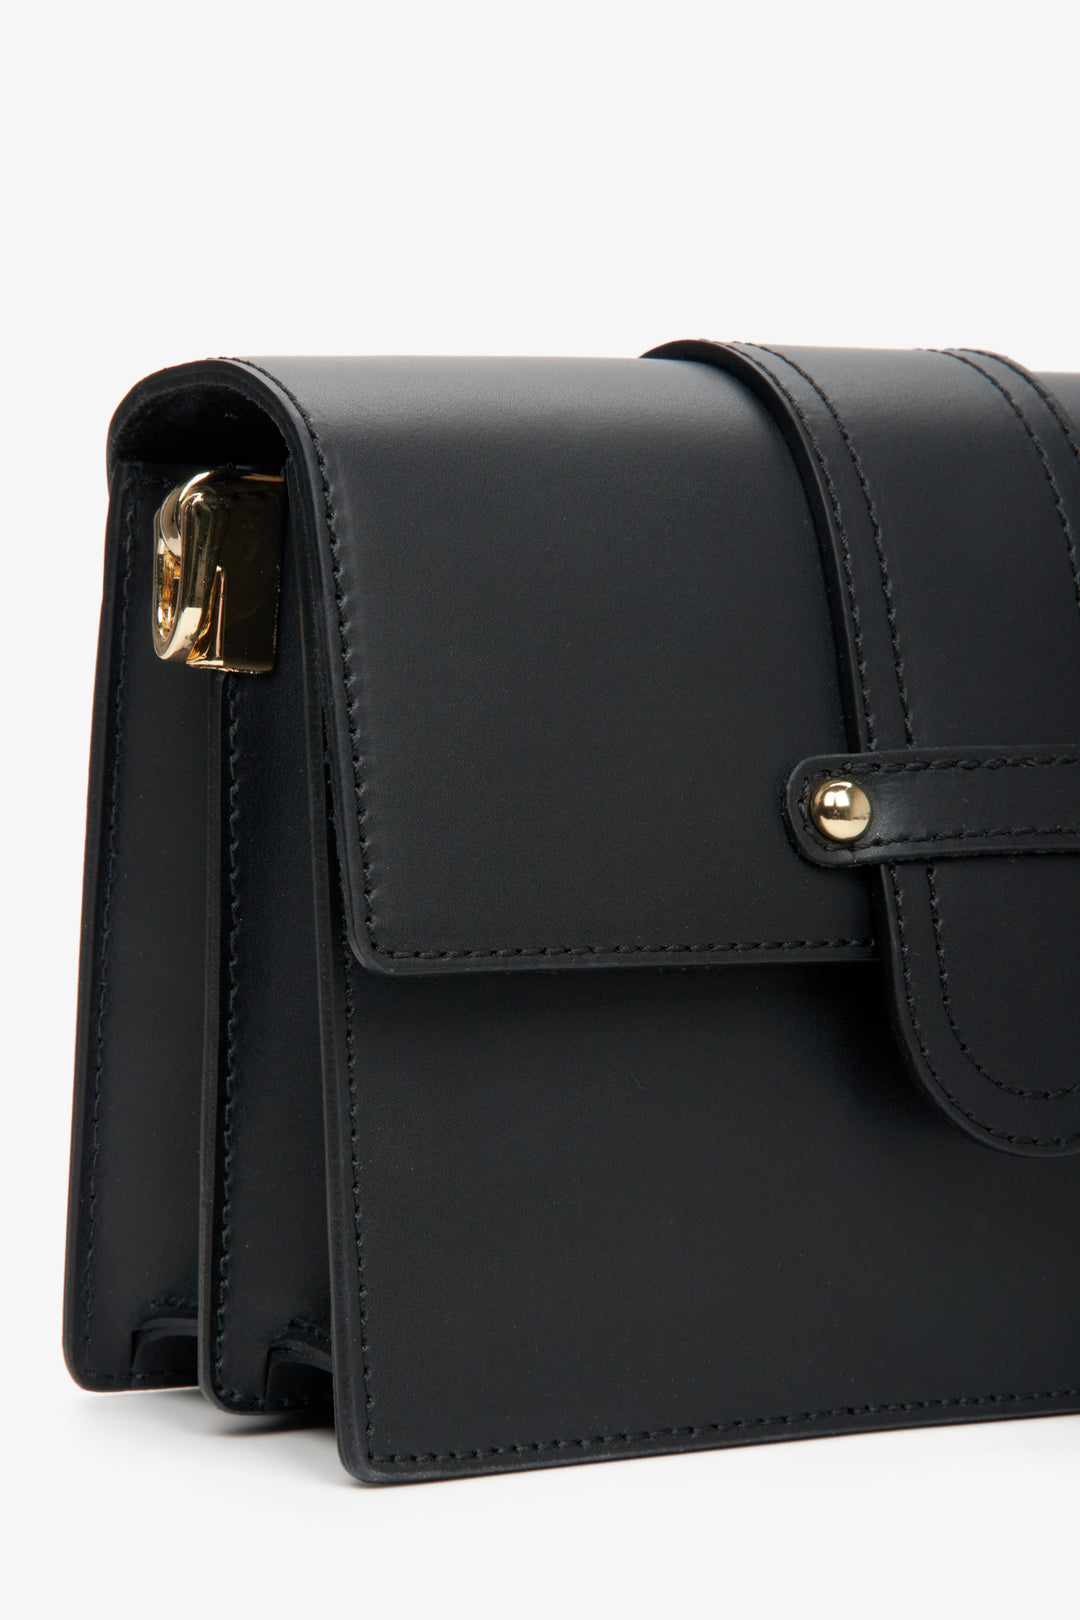 Black women's shoulder bag by Estro - close up on details.